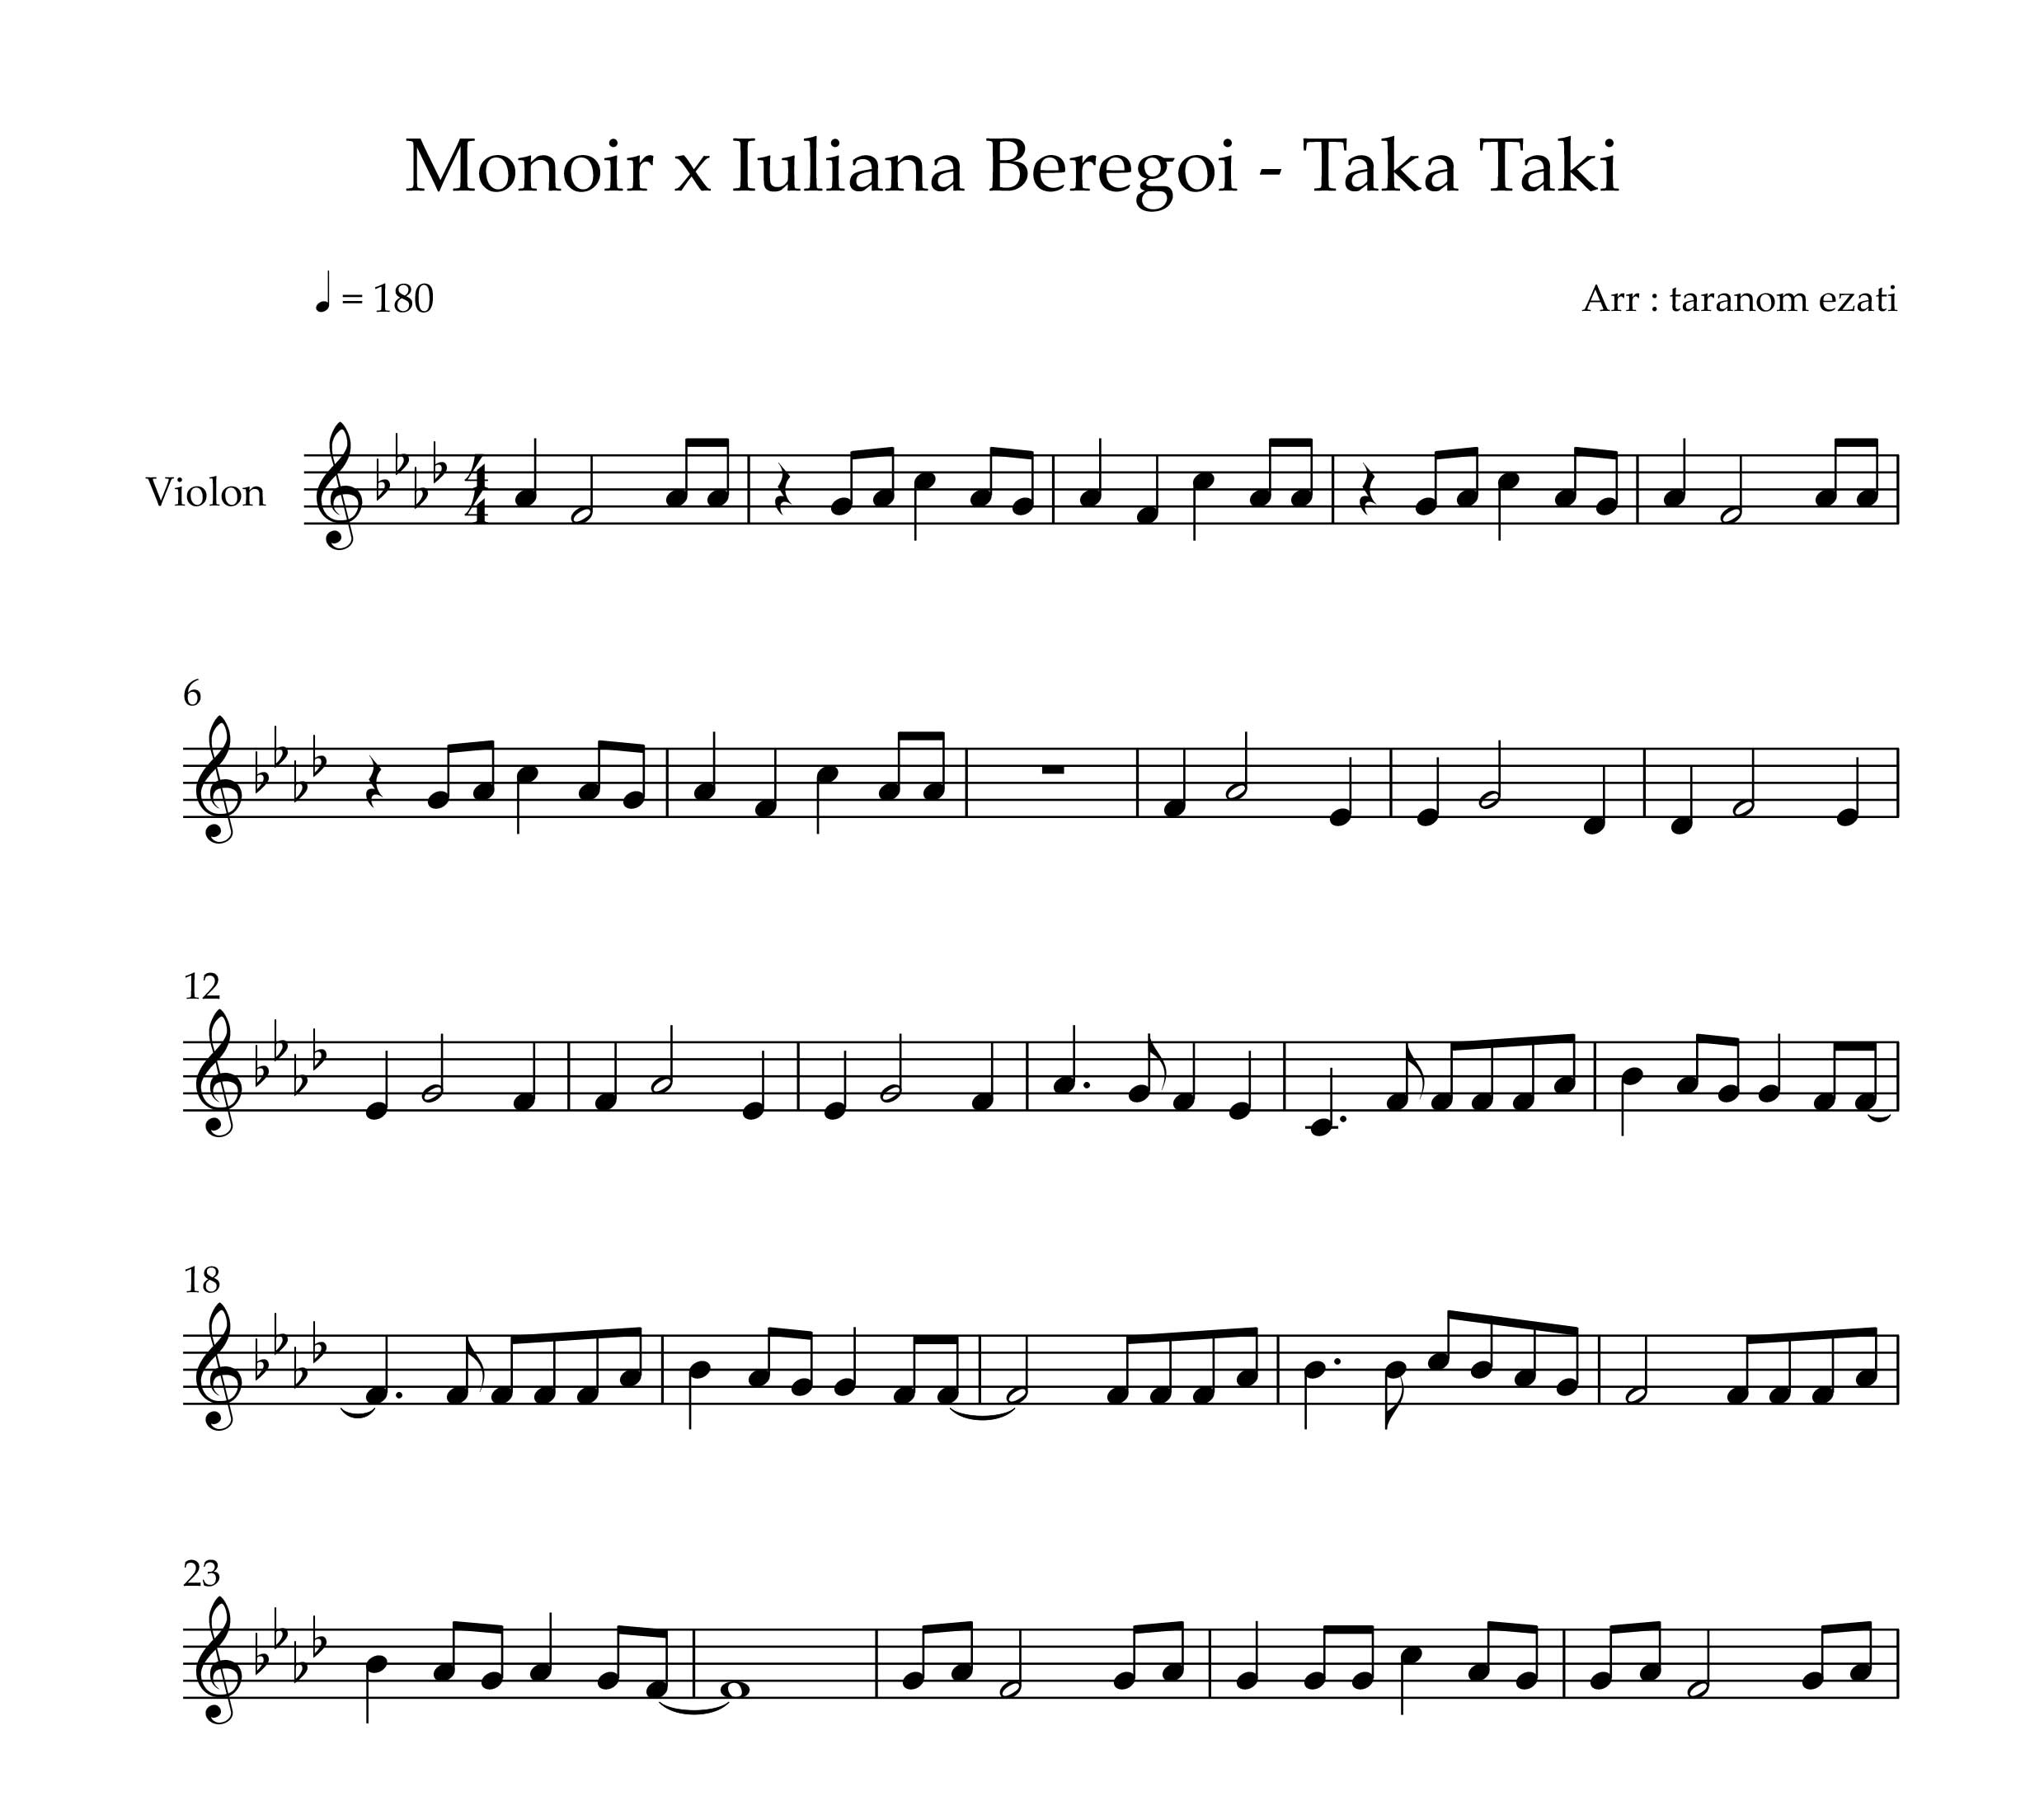 نت ویولن taka taki از monoir x Iuliana beregoi